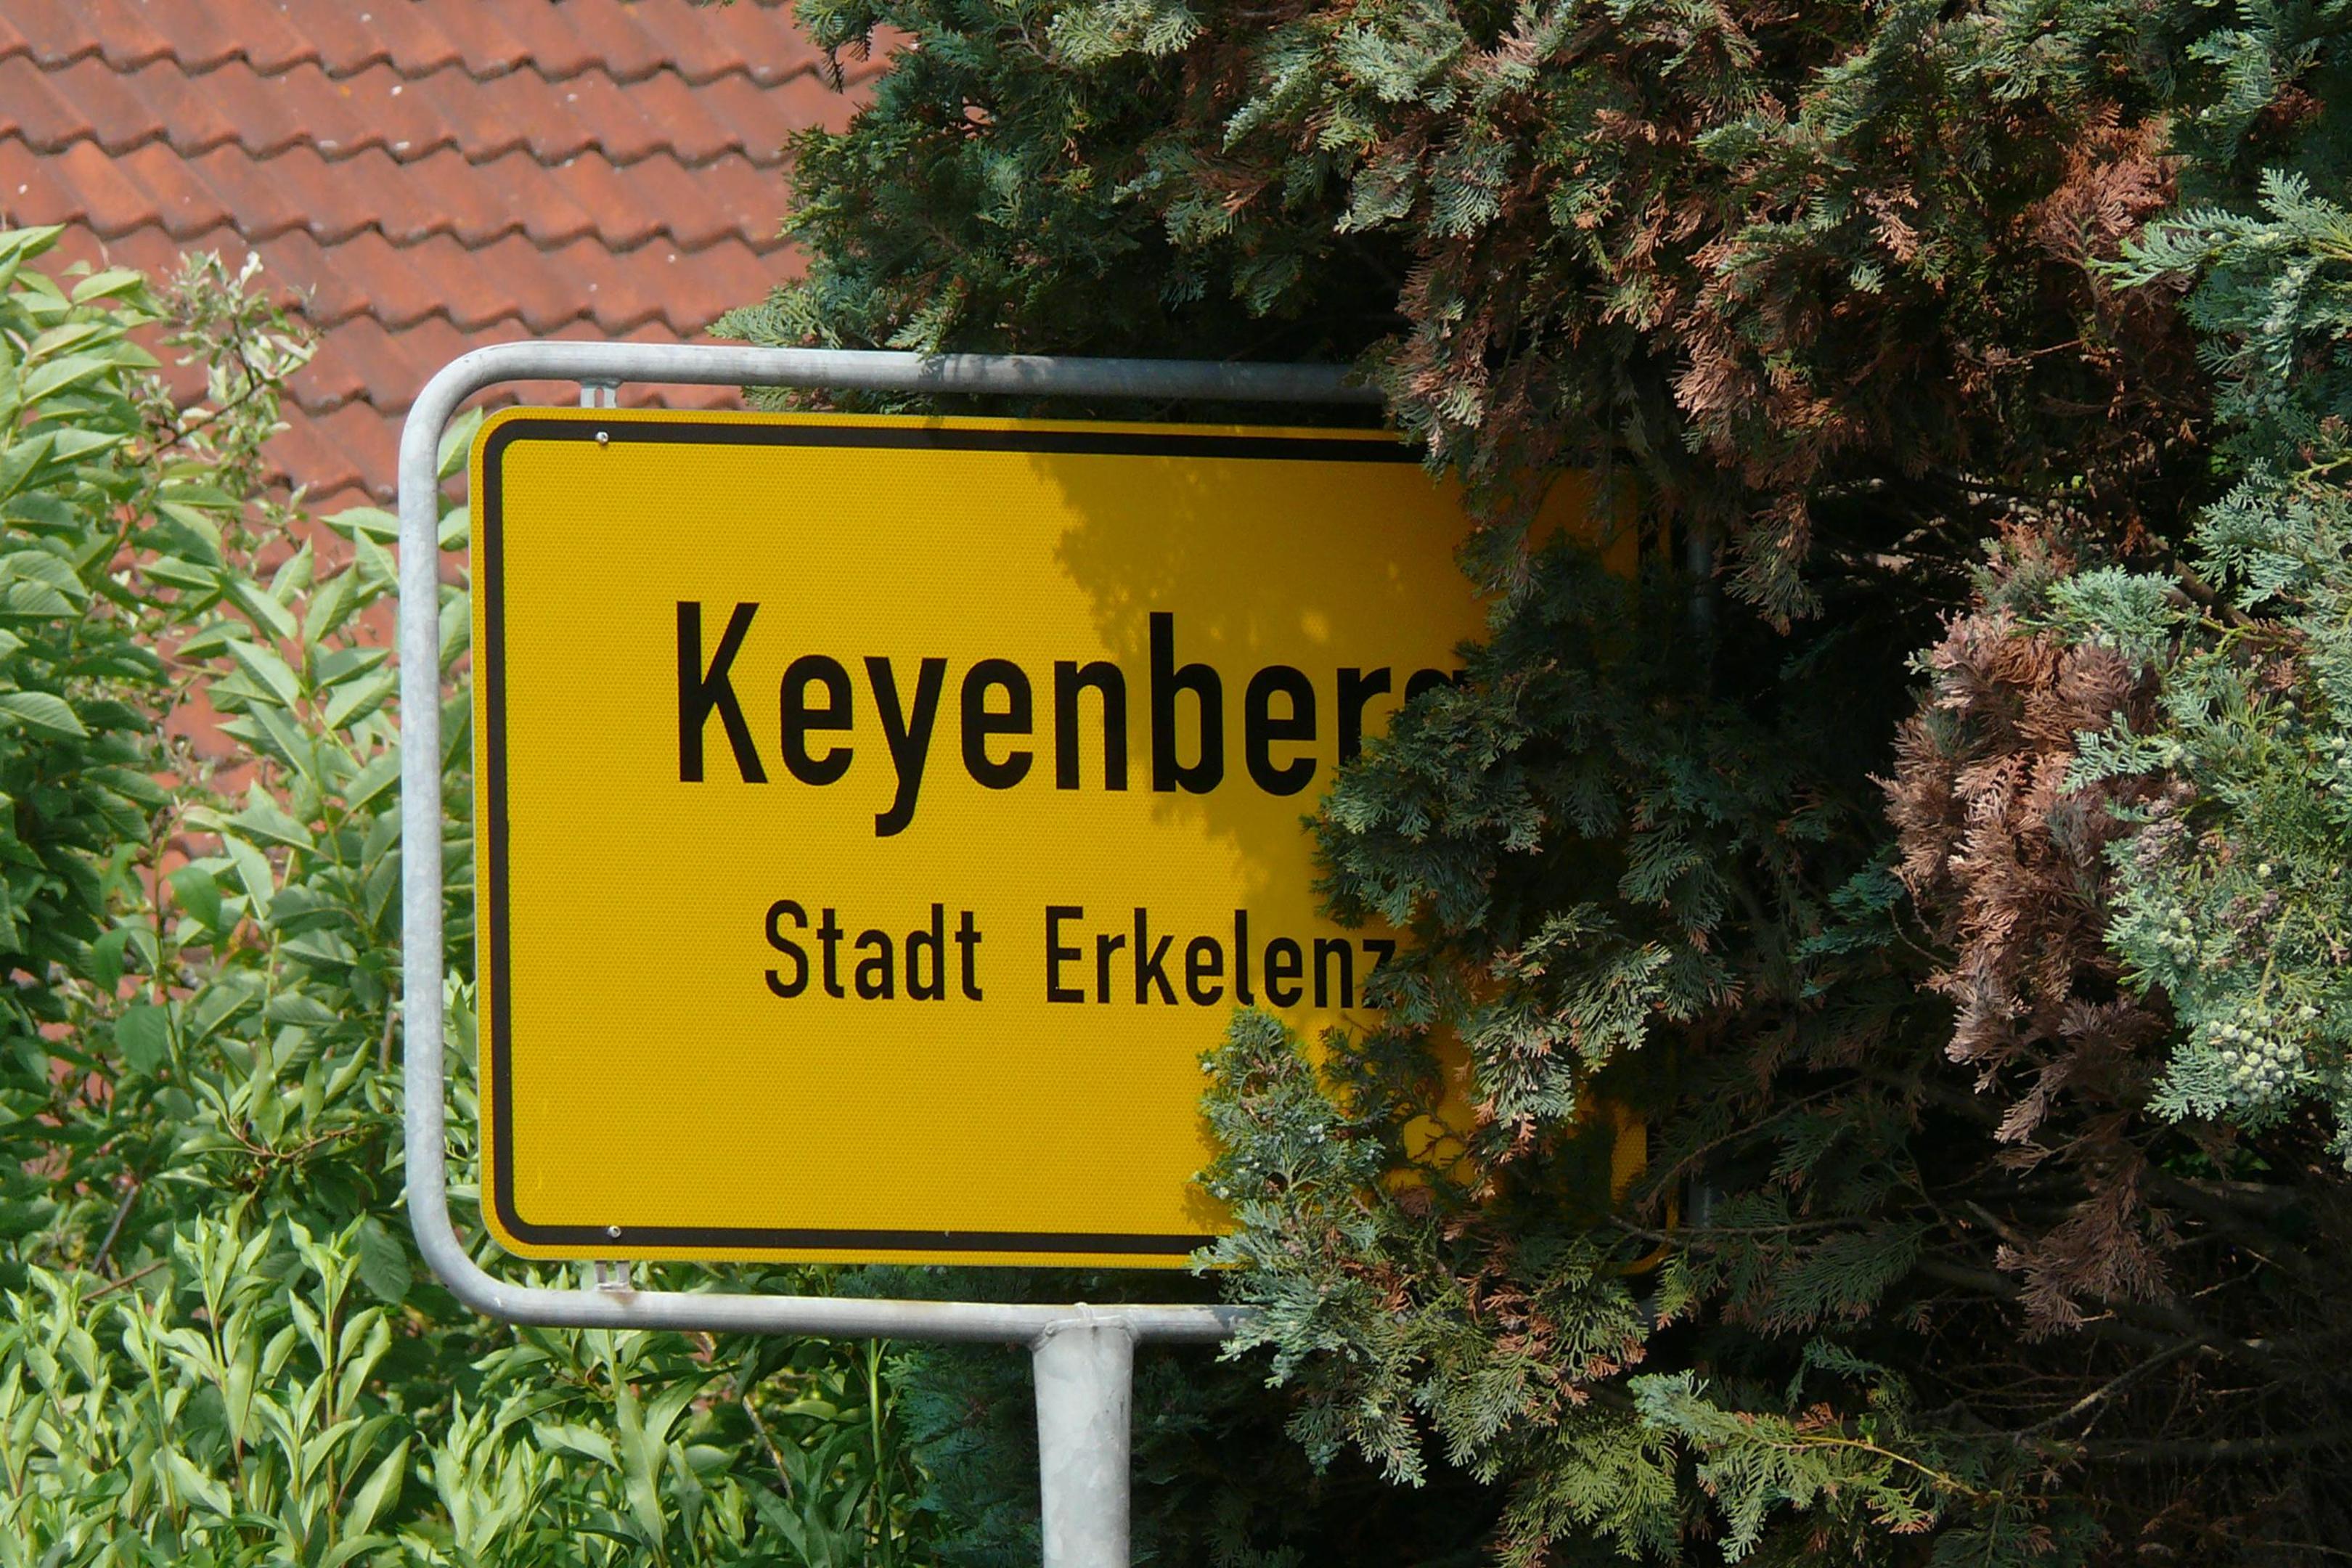 Keyenberg, mit oder ohne „(neu)“ - oder gleich ein ganz neuer Name? Über diese Frage wird in Erkelenz diskutiert.